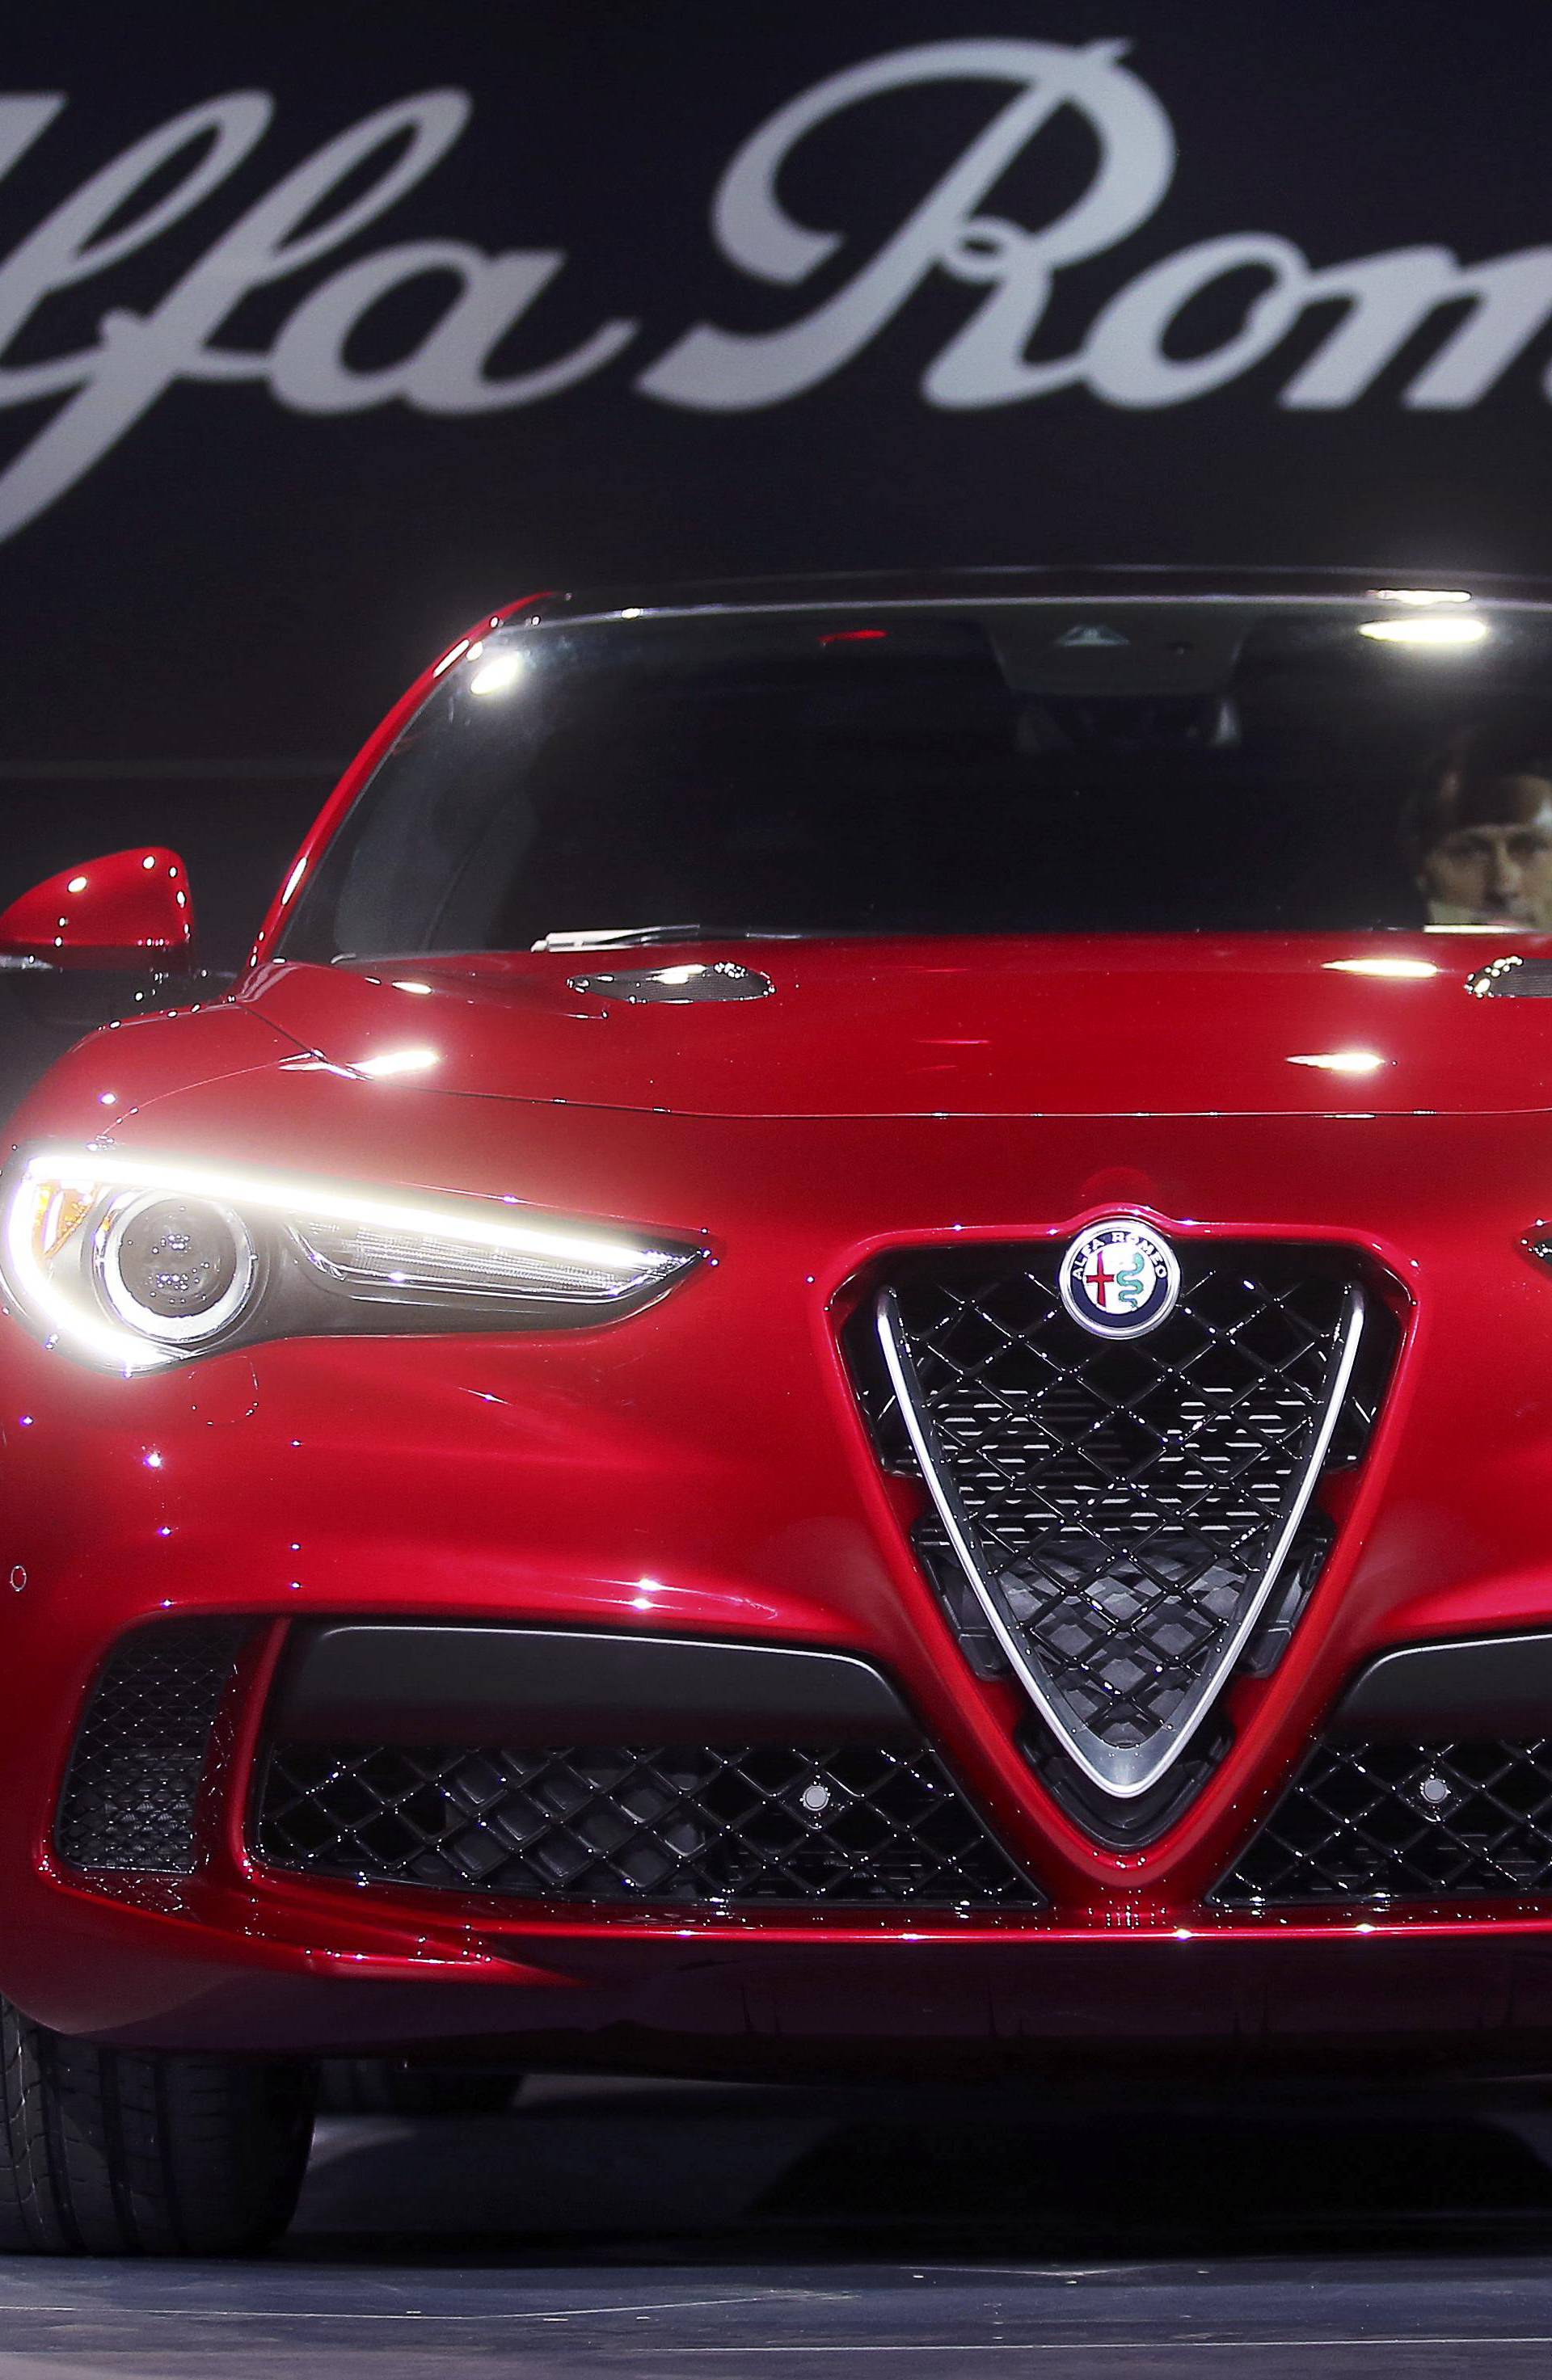 Alfa Romeo introduces the 2018 Stelvio SUV 